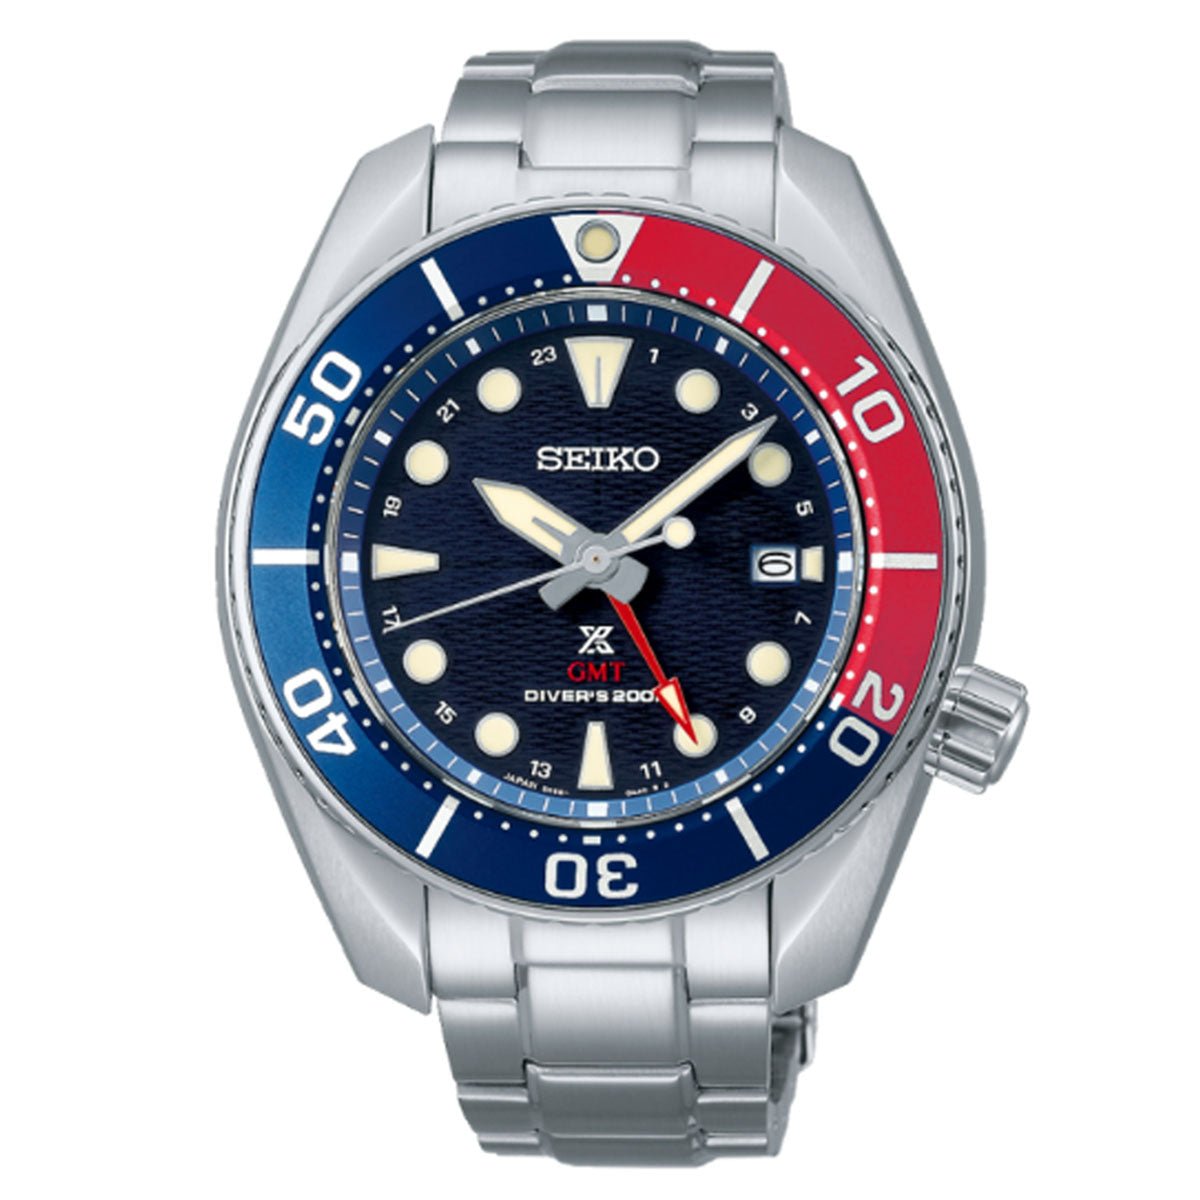 Seiko JDM Prospex GMT Sumo Solar Pepsi Bezel Divers 200m Watch SBPK005 -Seiko